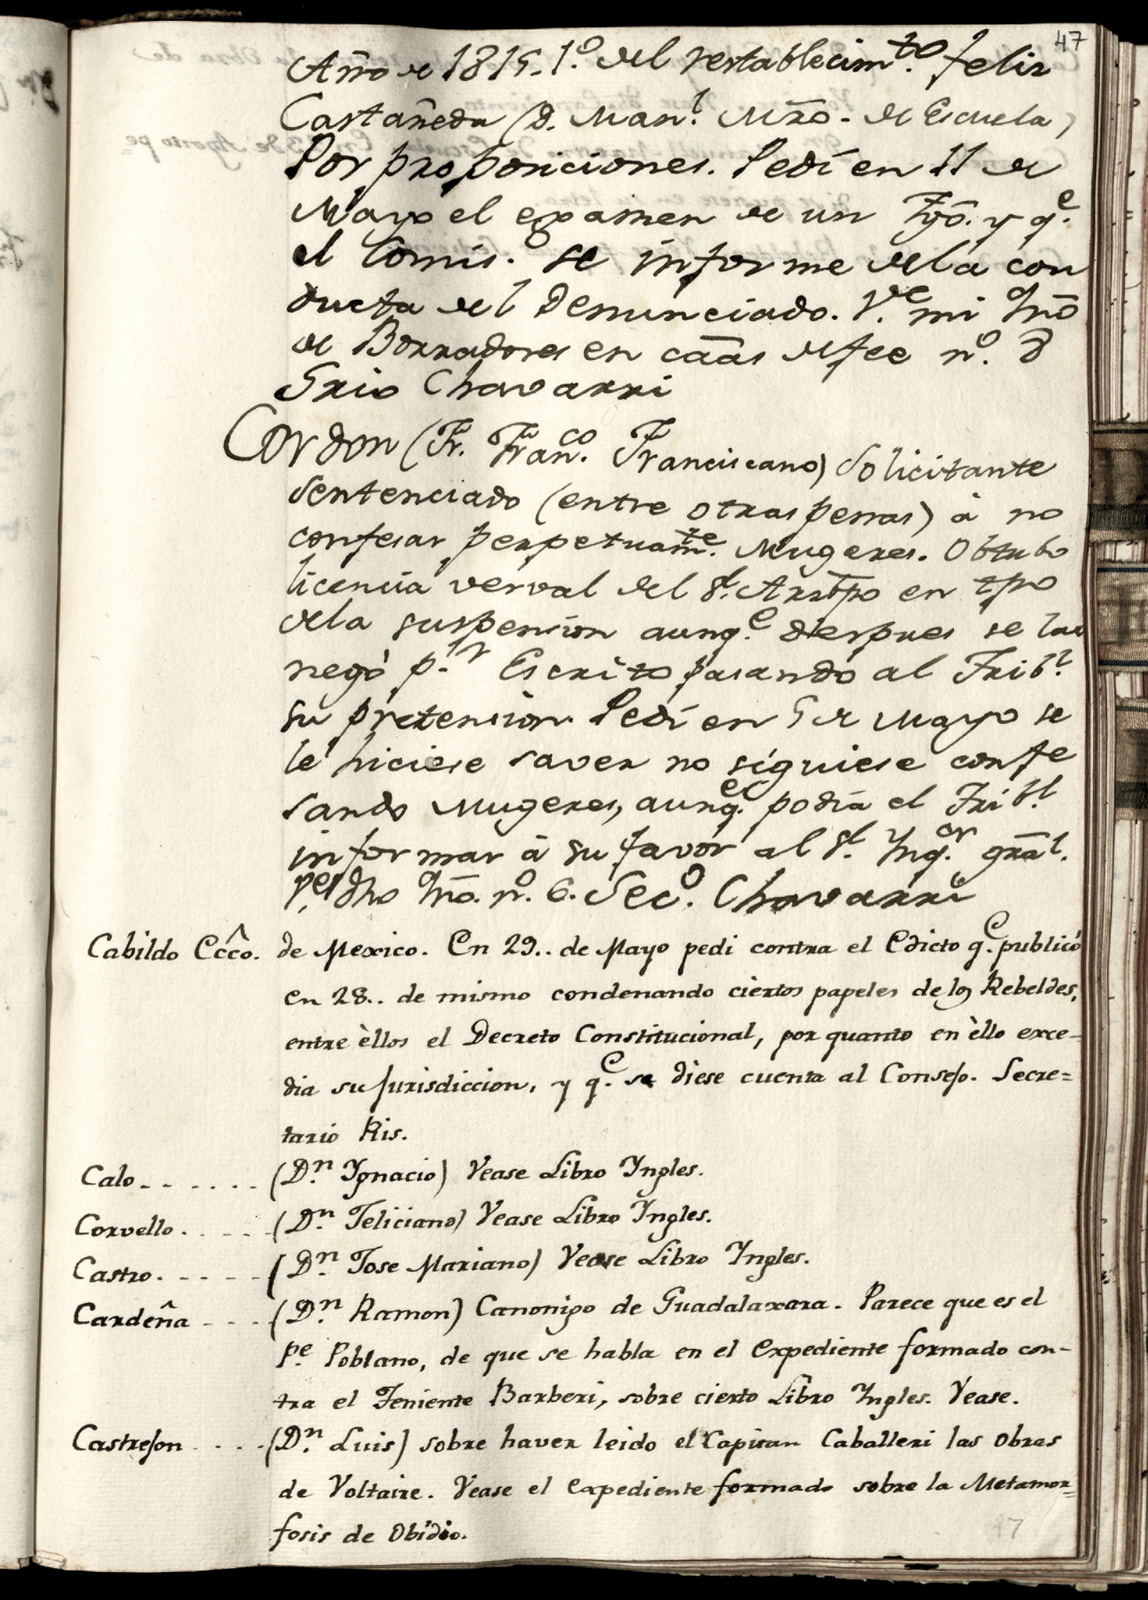 Inquisición. Registro por orden alfabetico de los reos juzgados por la Inquisicion desde el año de 1794 hasta el de 1815. México. [Manuscrito]